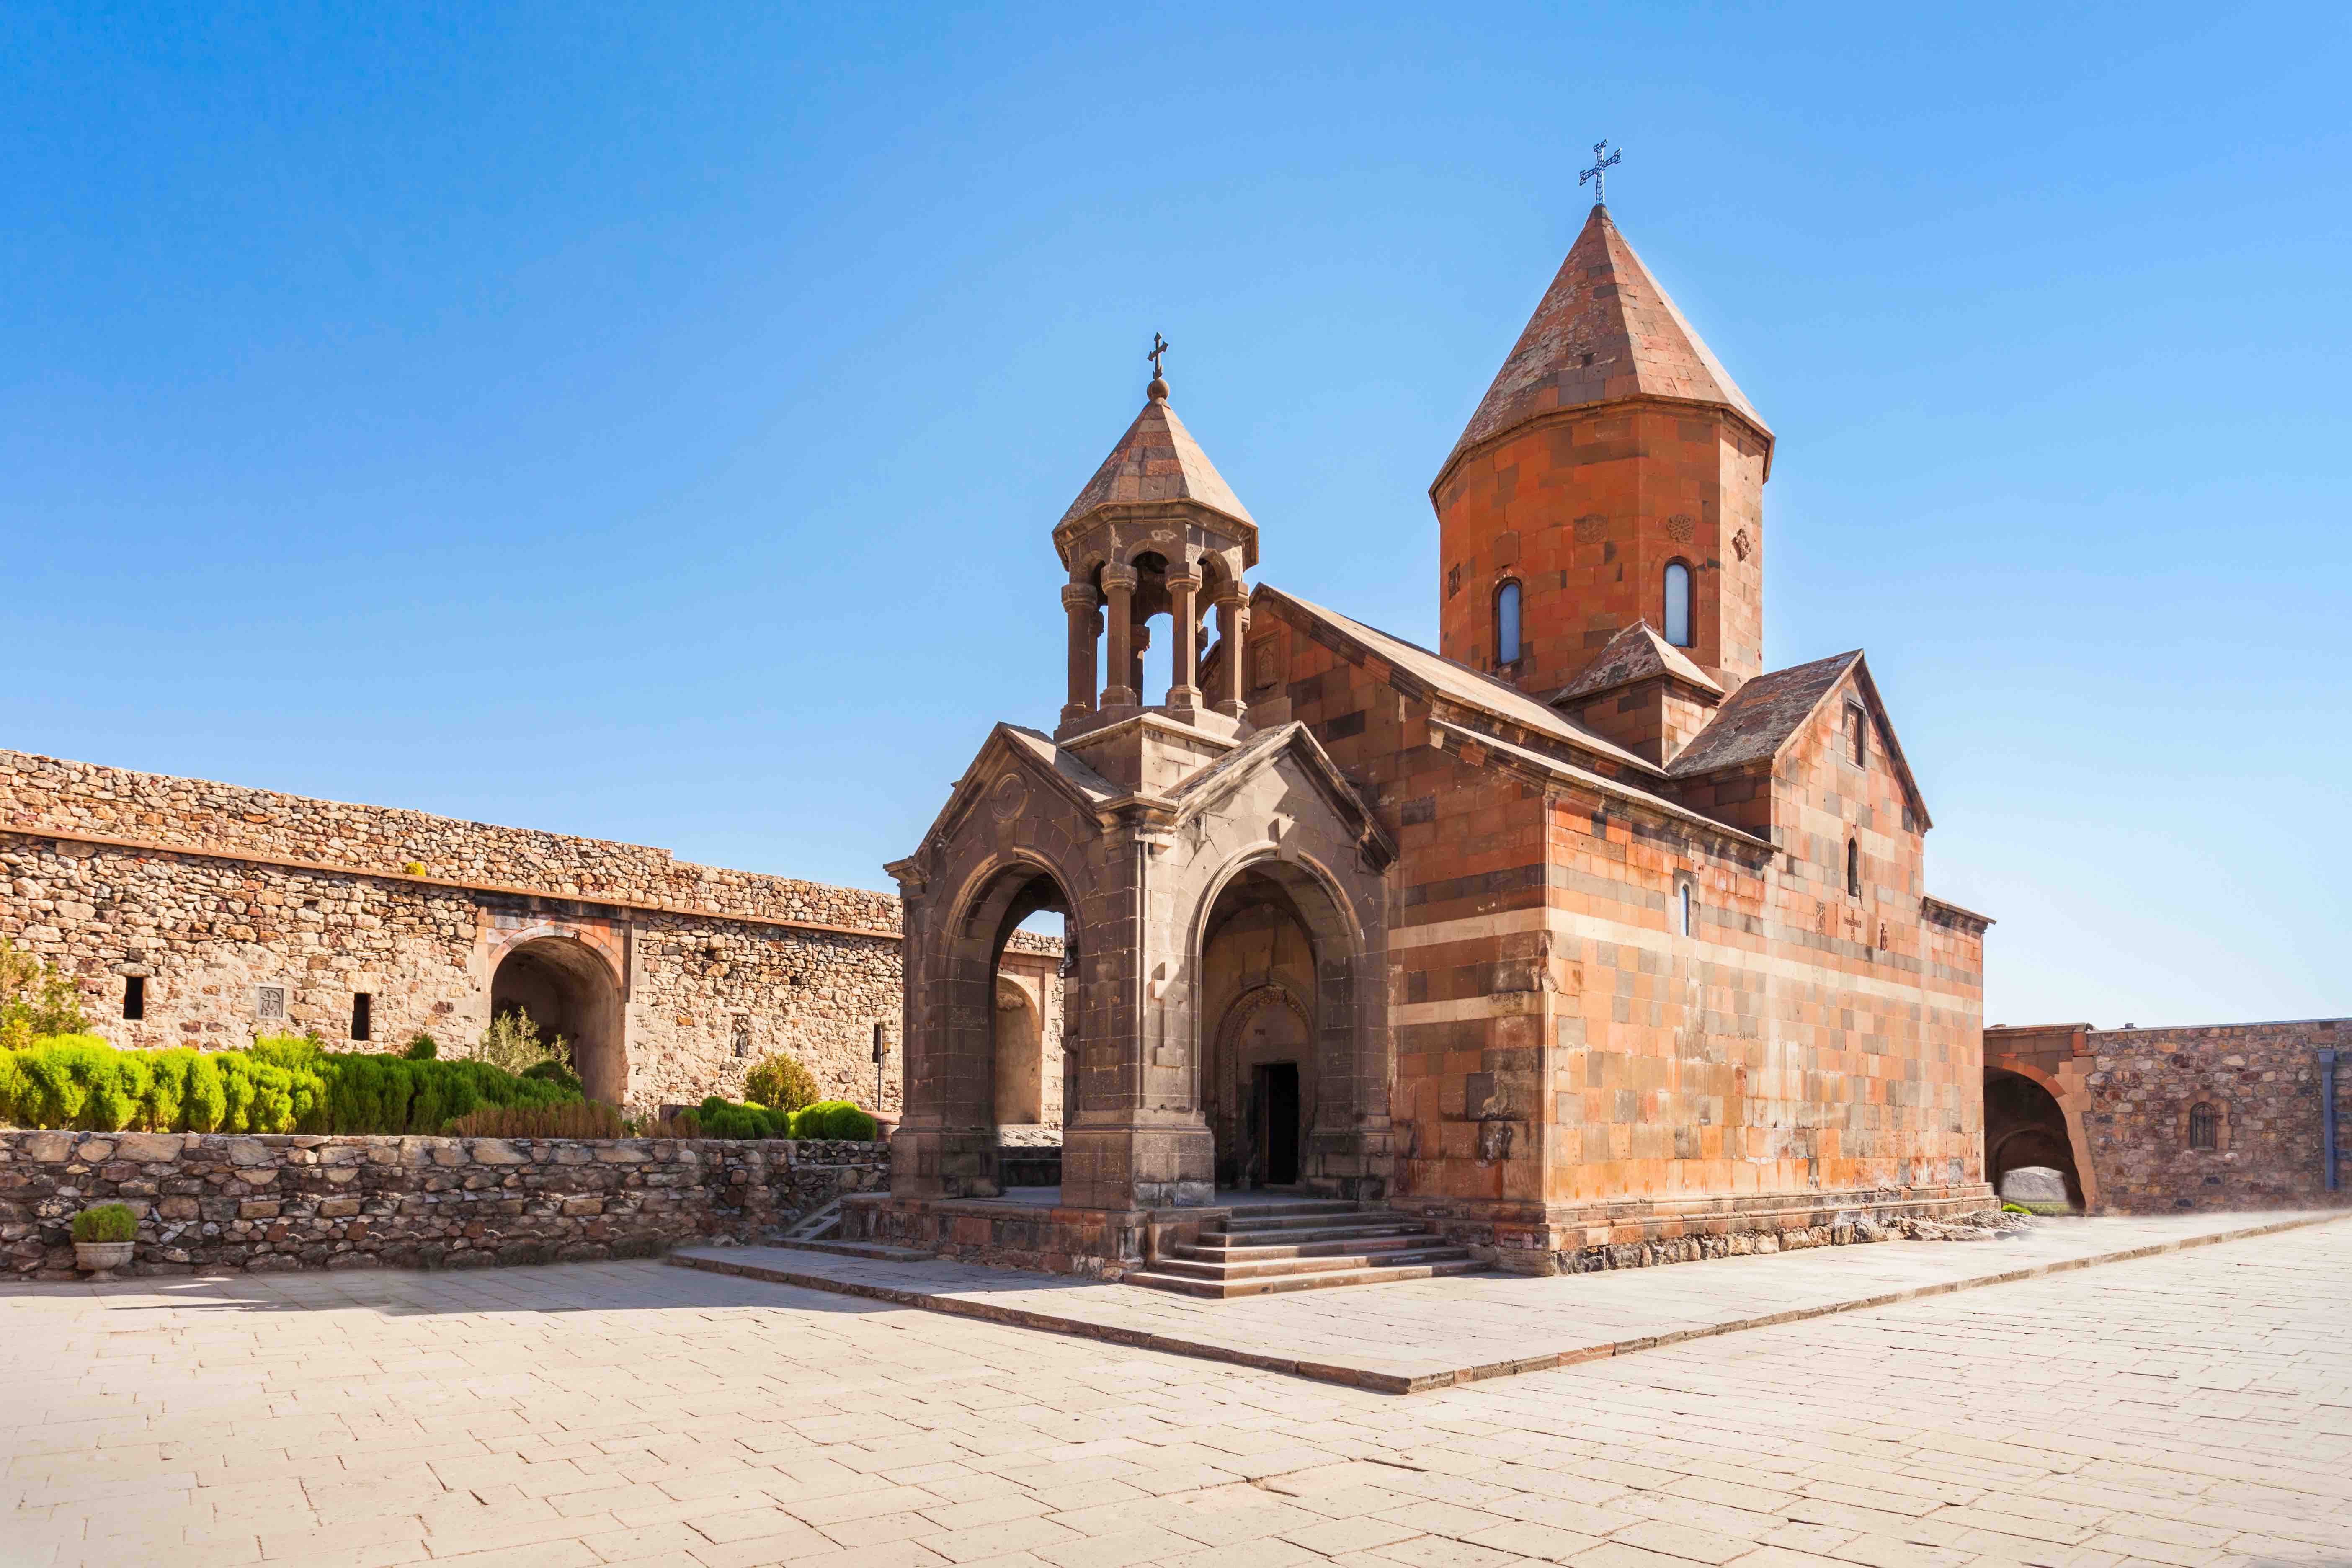 9 Astonishing Facts About Armenian (Language) 